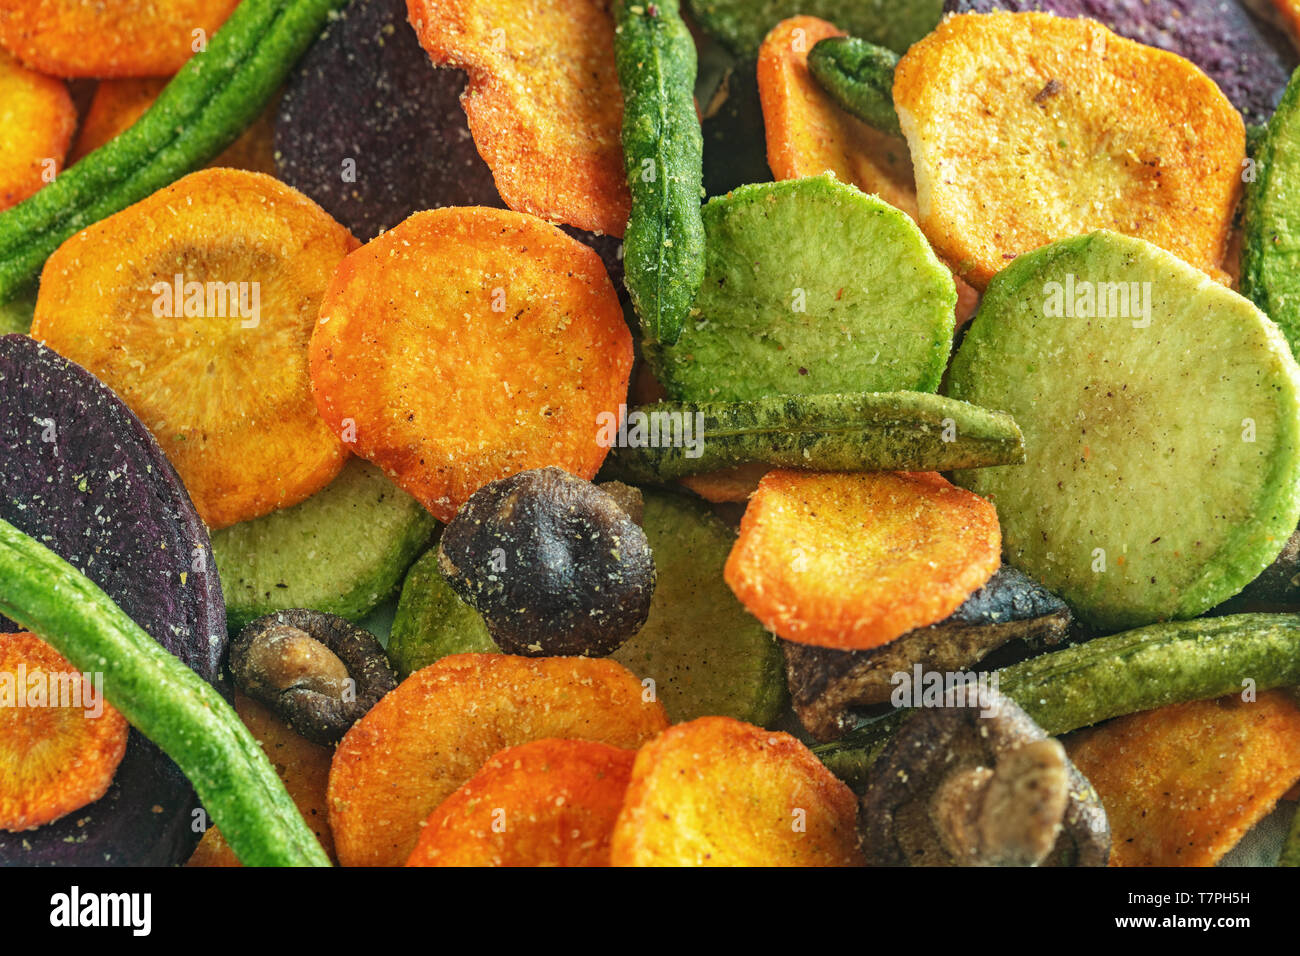 Hintergrund von getrocknetem Gemüse Chips von Karotten, Rüben, Pastinake,  grünen Bohnen, Pilze und andere Gemüse. Gesunde Snack, biologische  Ernährung und vegan fo Stockfotografie - Alamy